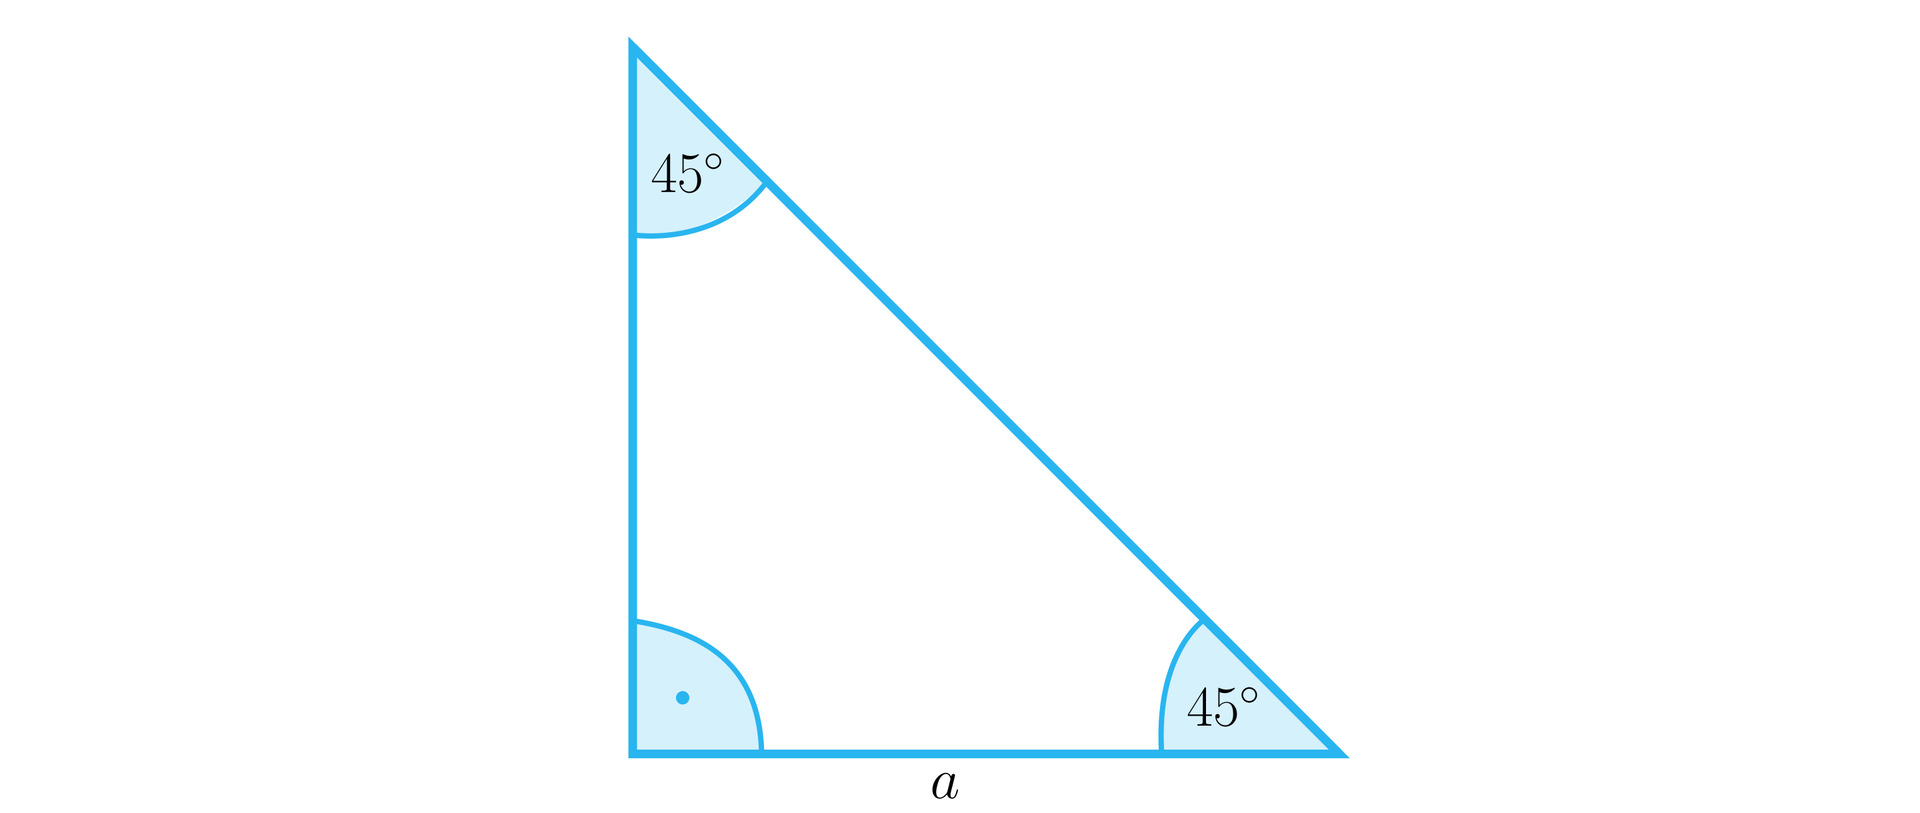 Ilustracja przedstawia równoramienny trójkąt prostokątny o podstawie a. W trójkącie zaznaczono trzy kąty wewnętrzne: kąt prosty między przyprostokątnymi oraz dwa kąty o mierze czterdziestu pięciu stopni między przeciwprostokątną a każdą z przyprostokątnych.